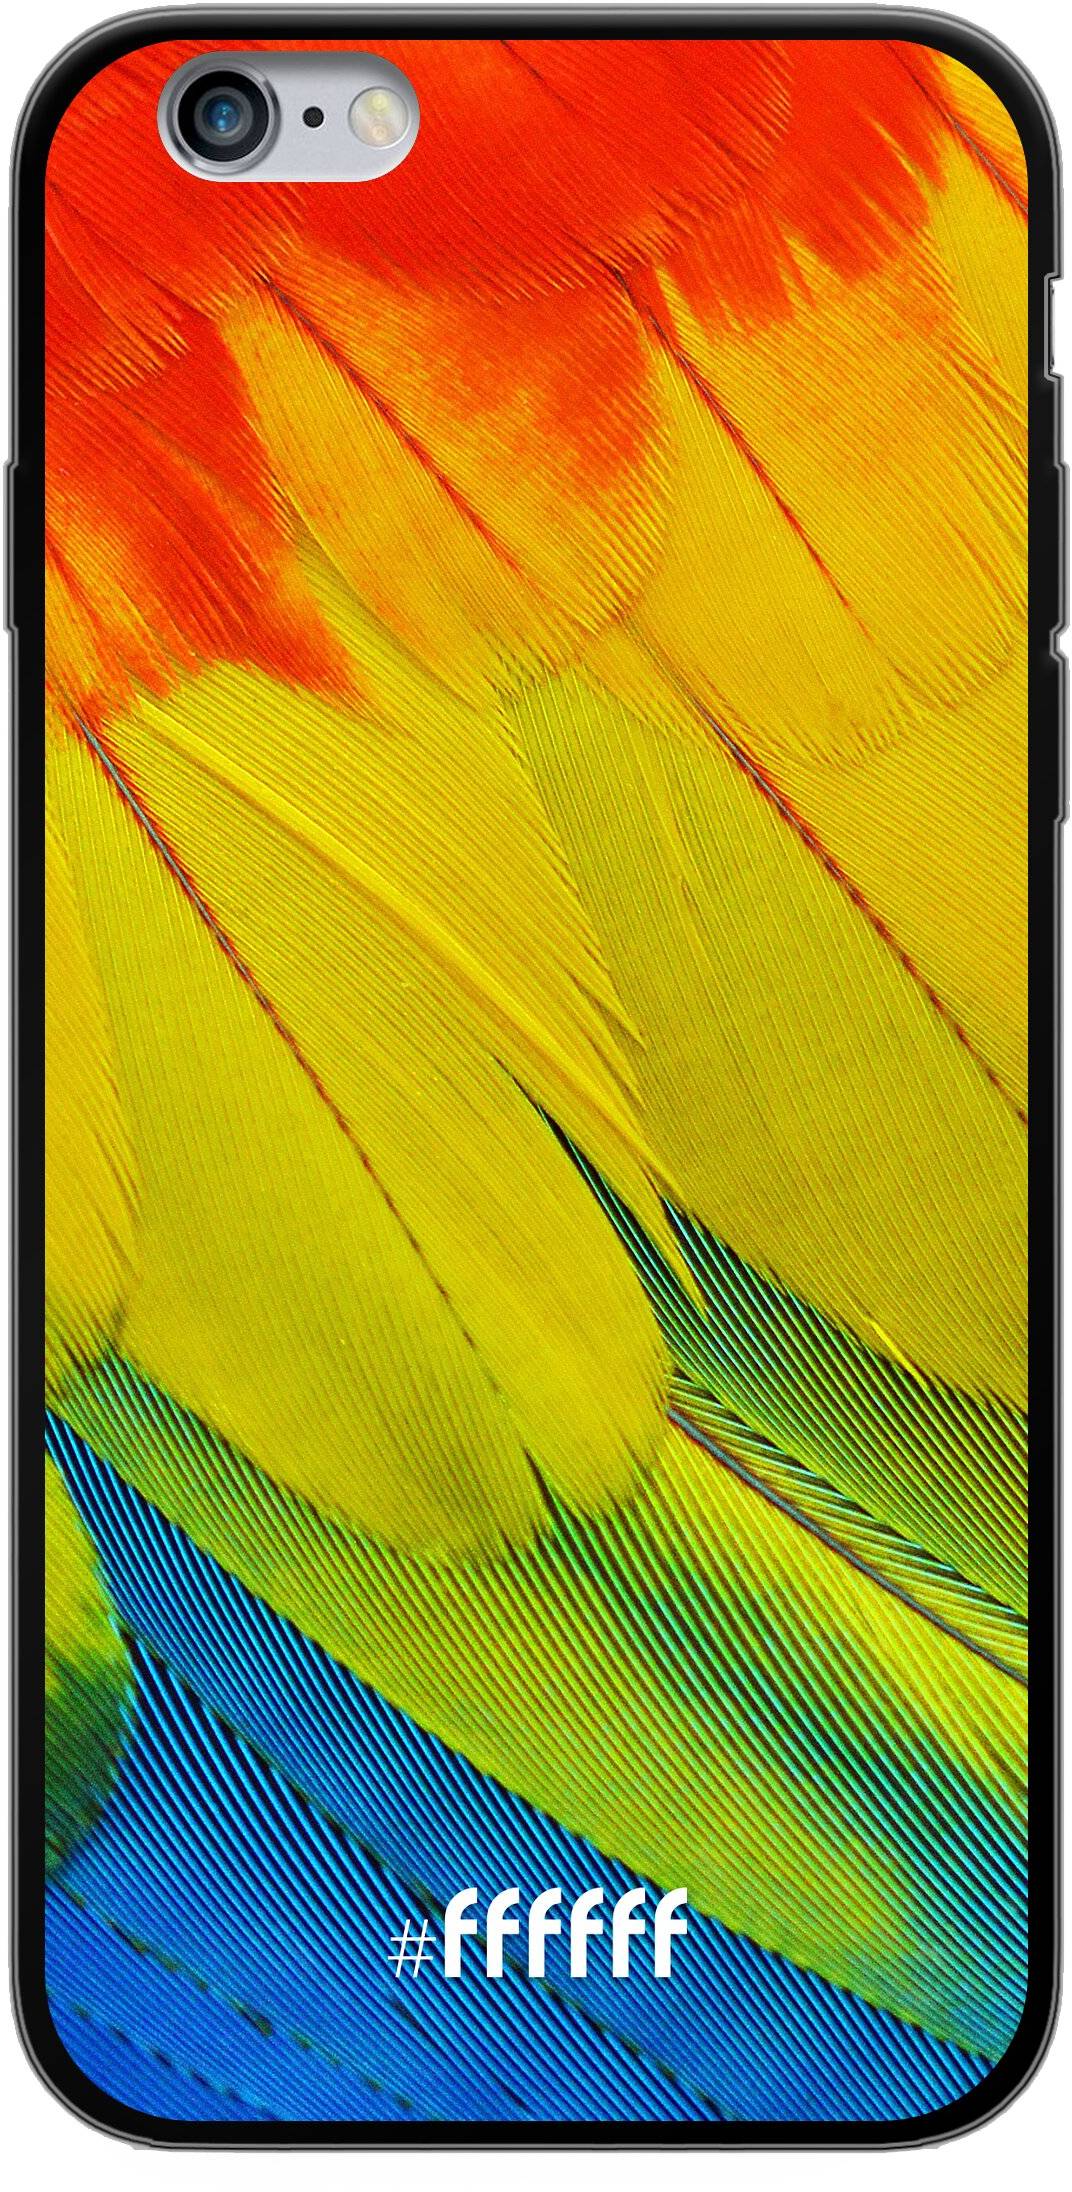 Macaw Hues iPhone 6